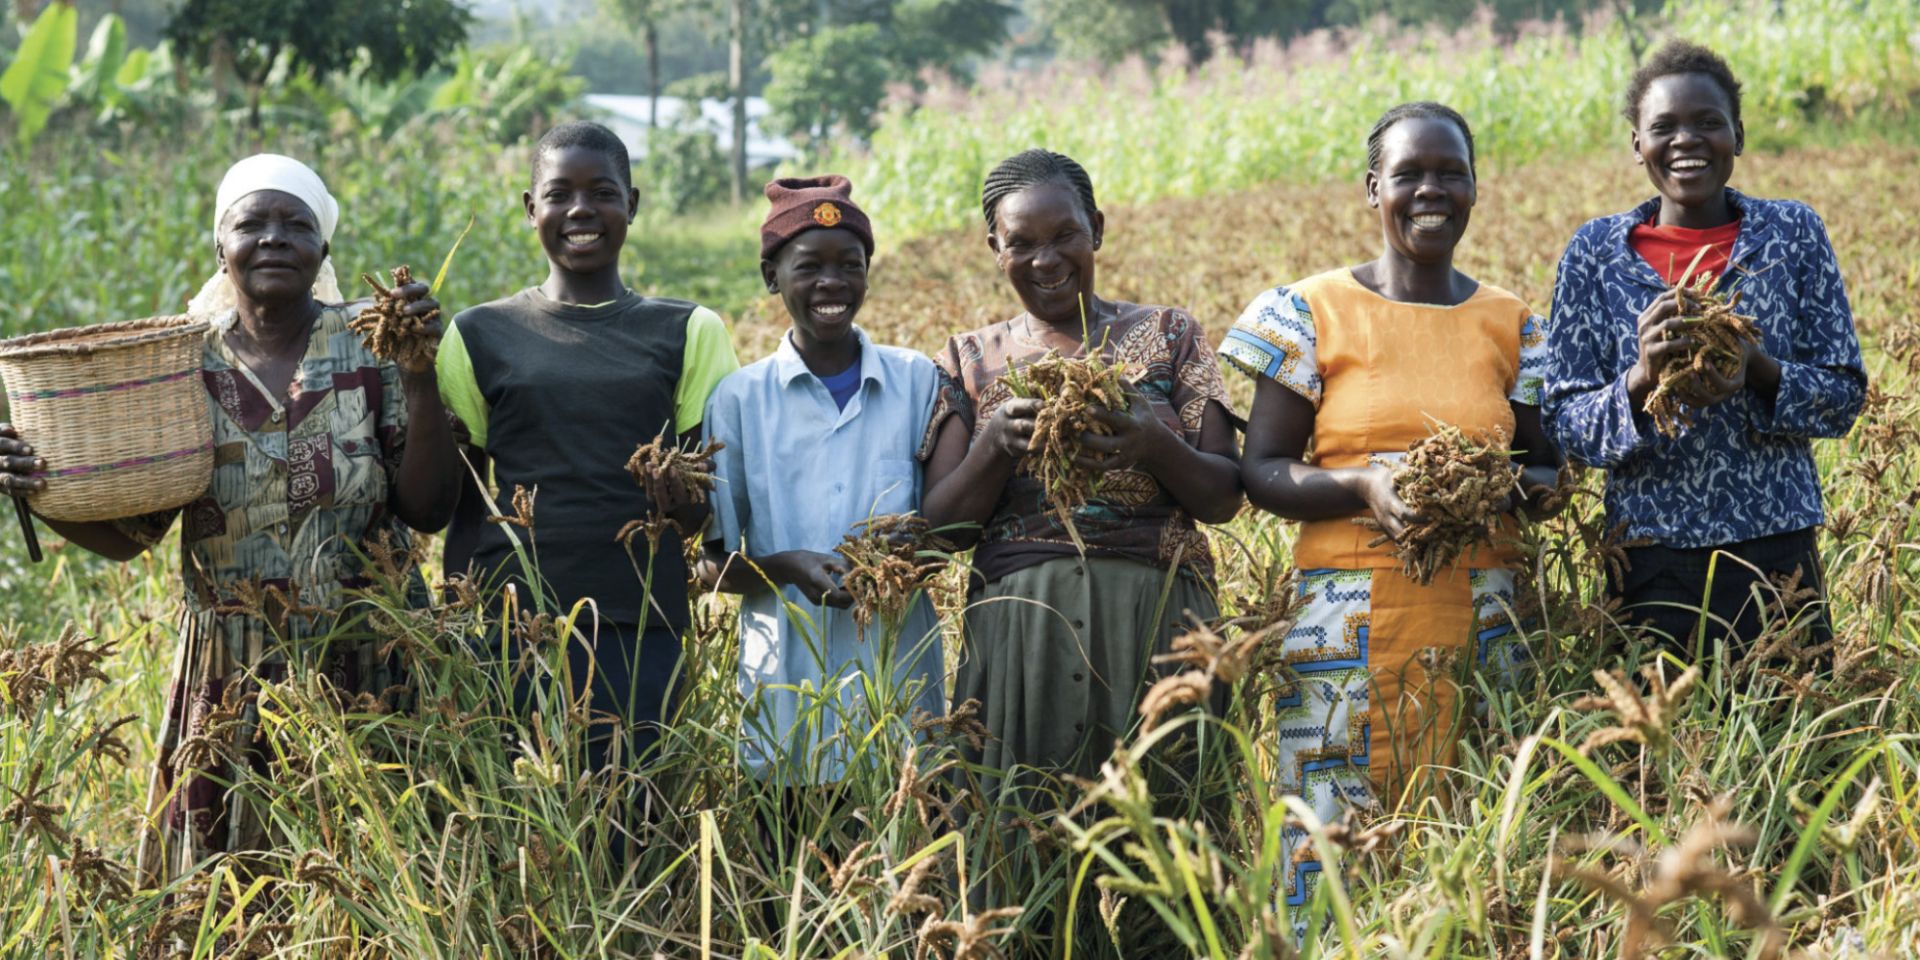 Group of women farmers